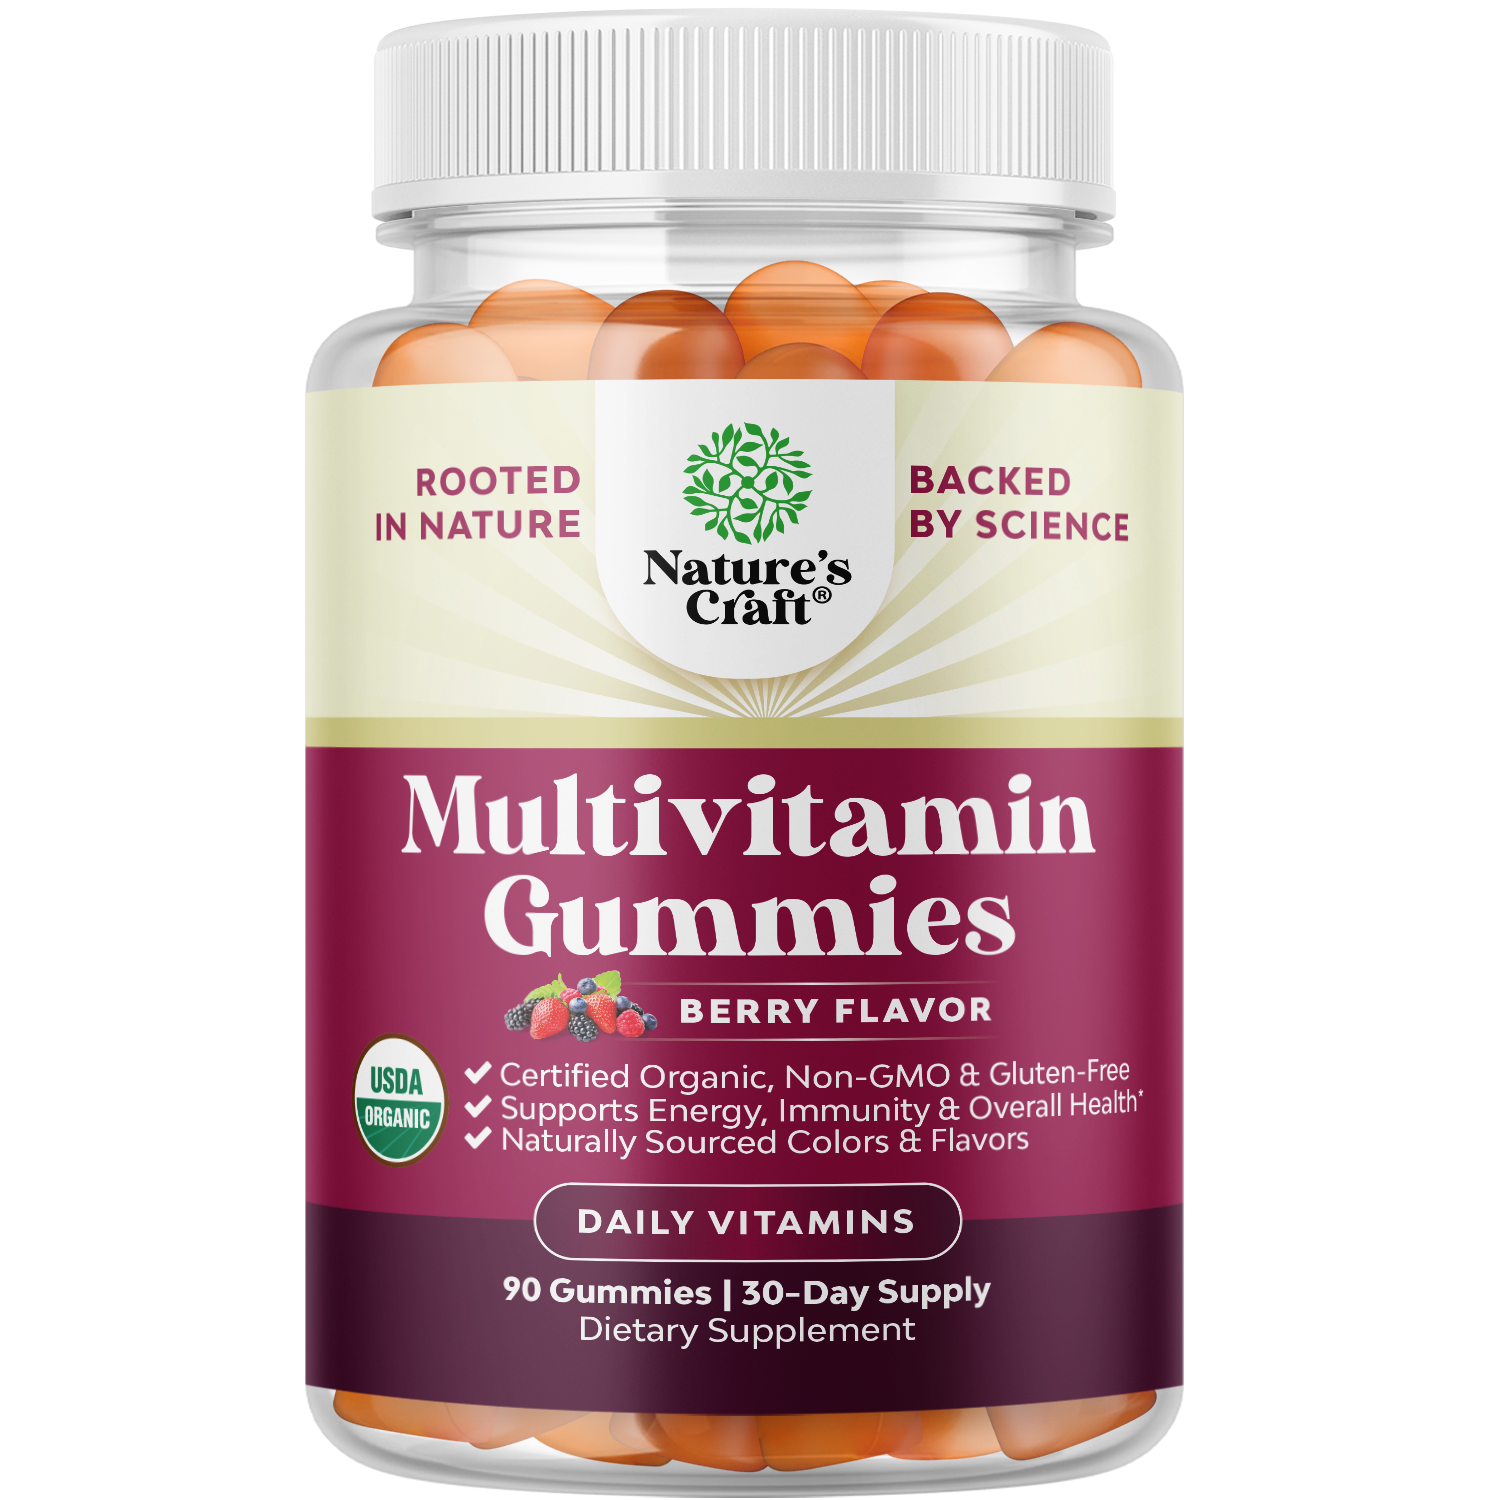 Multivitamin Gummies - Berry Flavor